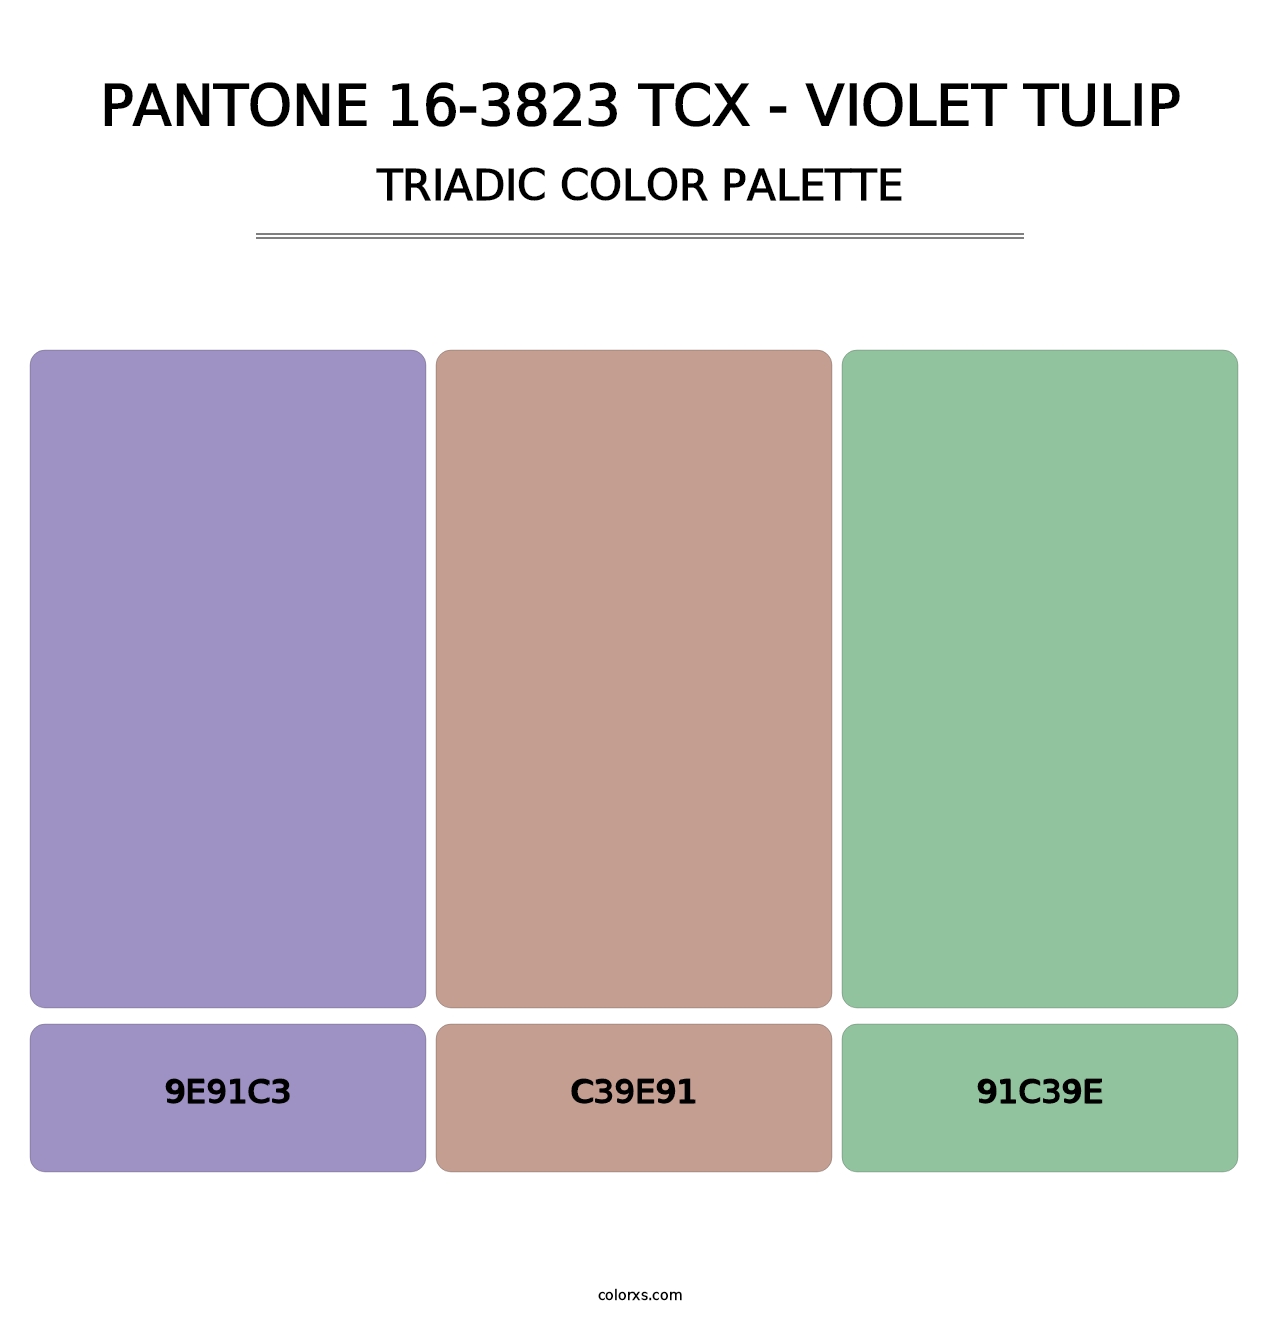 PANTONE 16-3823 TCX - Violet Tulip - Triadic Color Palette